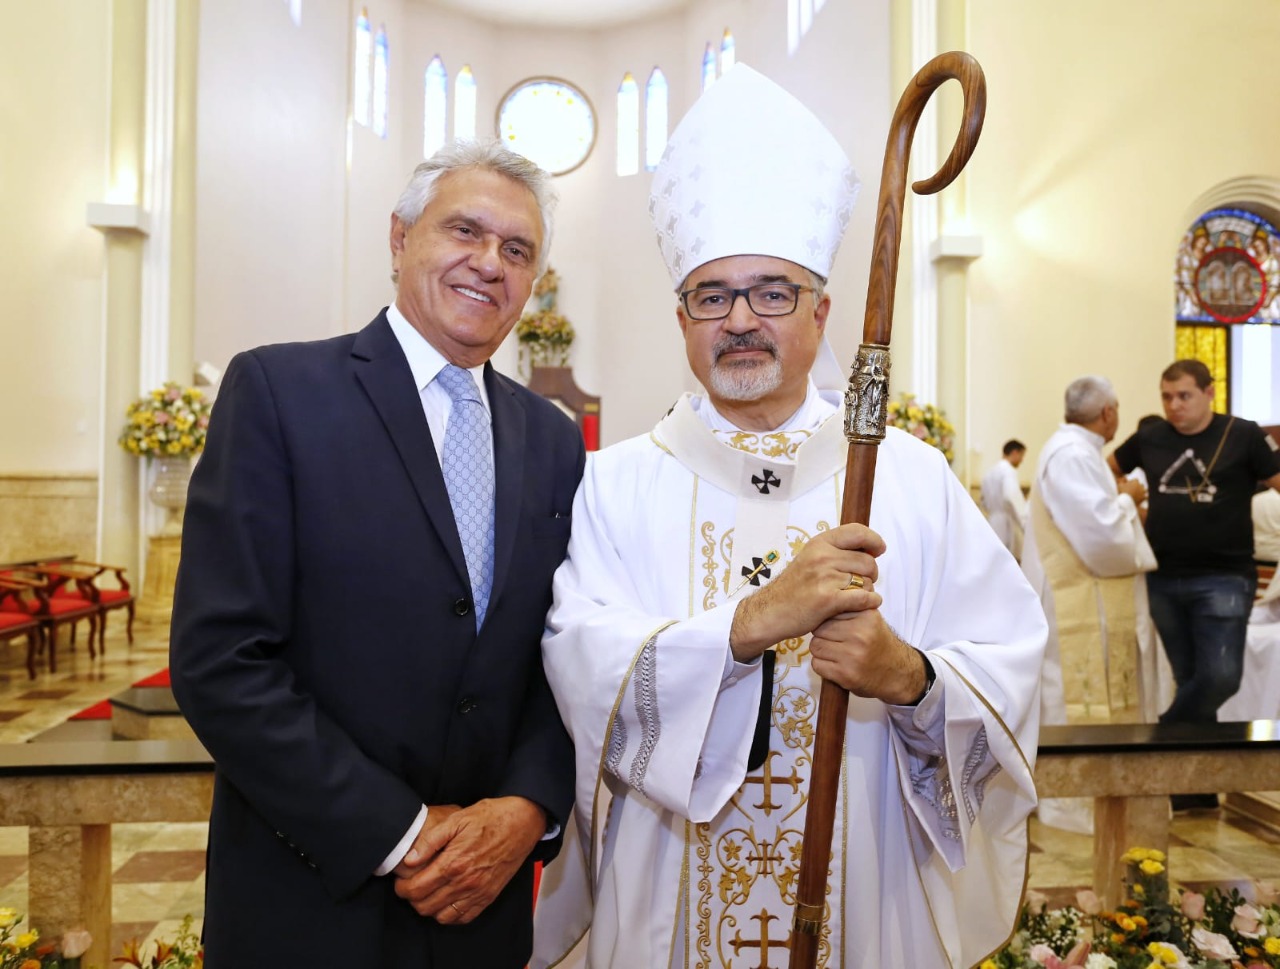 Governador Ronaldo Caiado prestigia entrega de símbolo sagrado ao arcebispo de Goiânia: "continuar sendo pastor do rebanho católico"